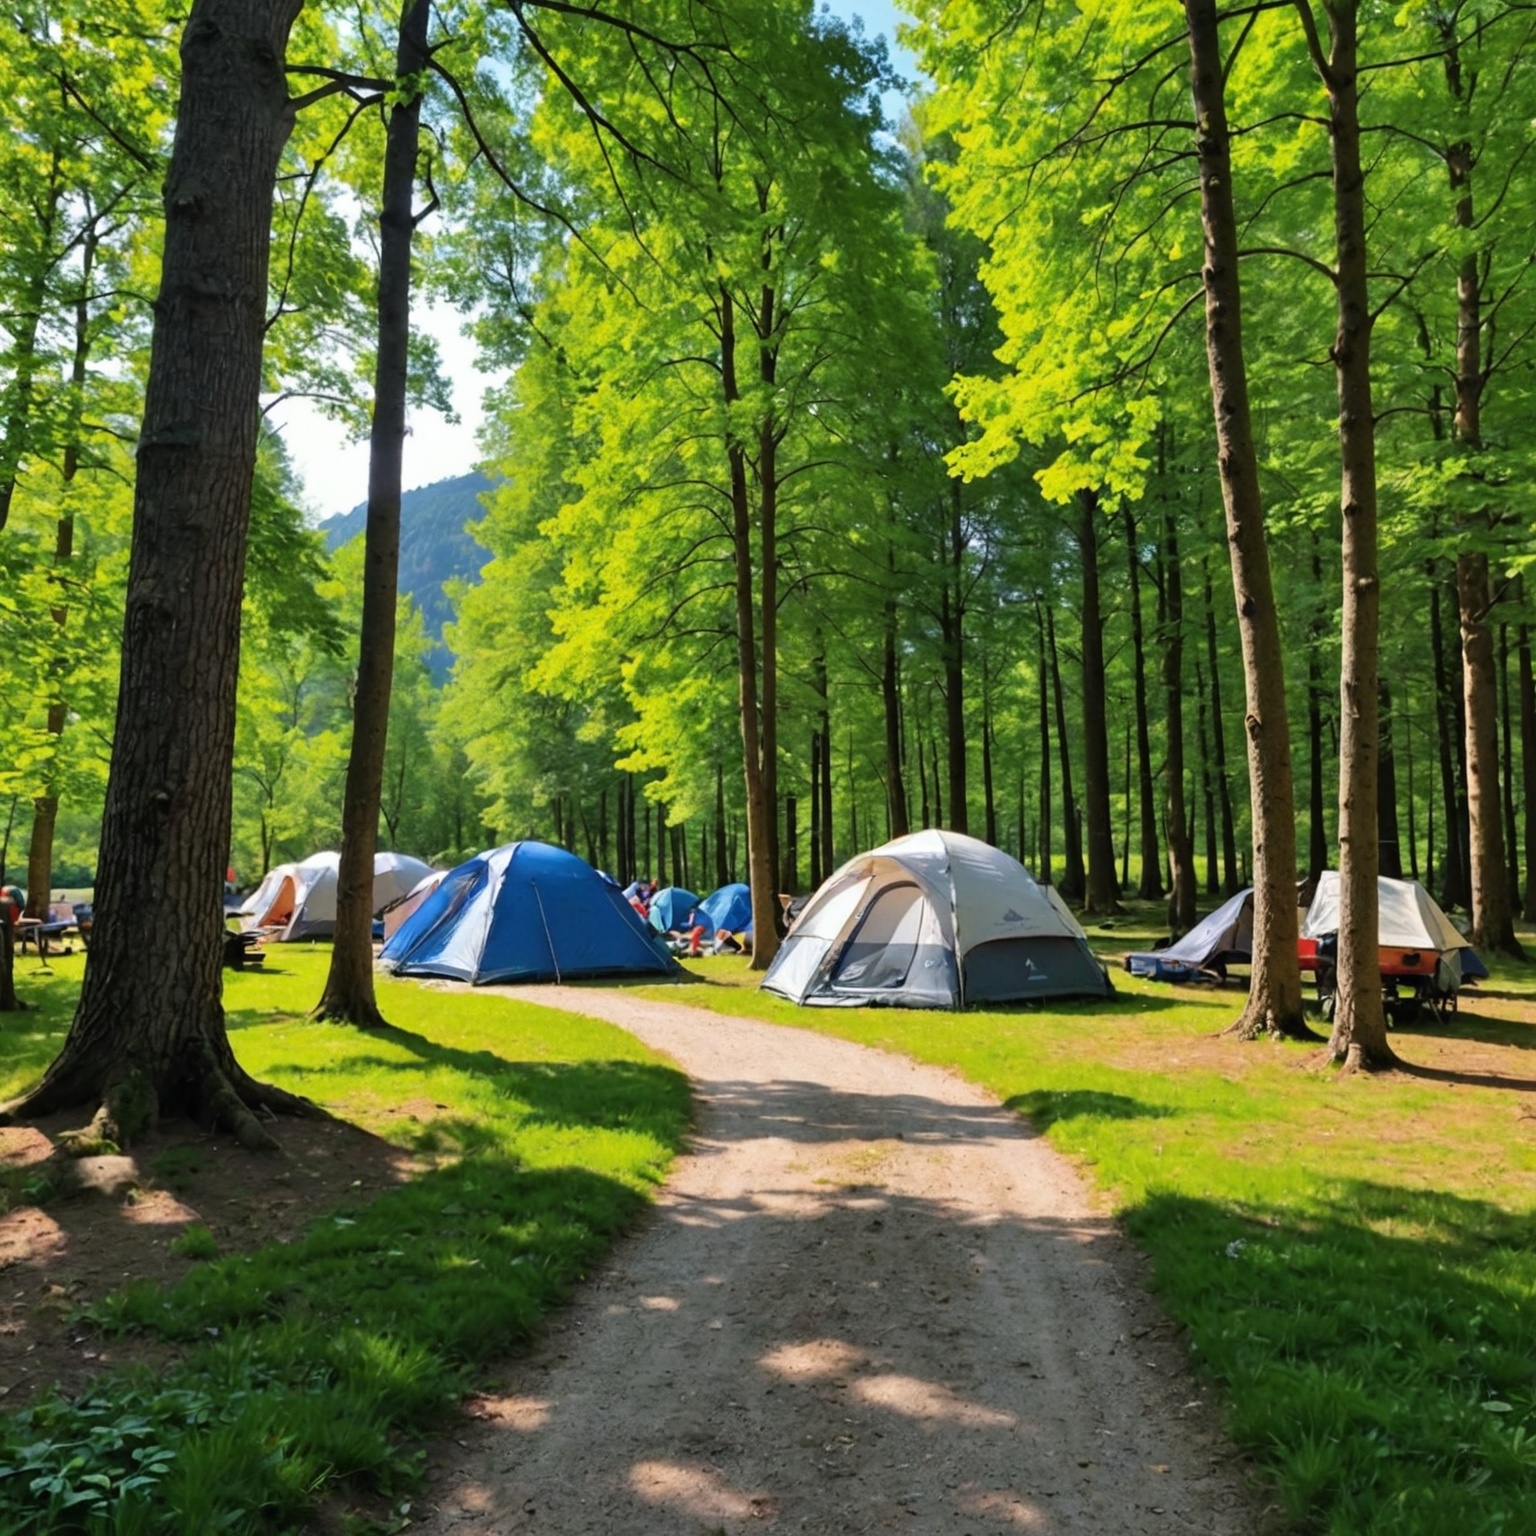 Dénichez les Meilleurs Campings à Petit Prix en France: Guide pour des Vacances Abordables